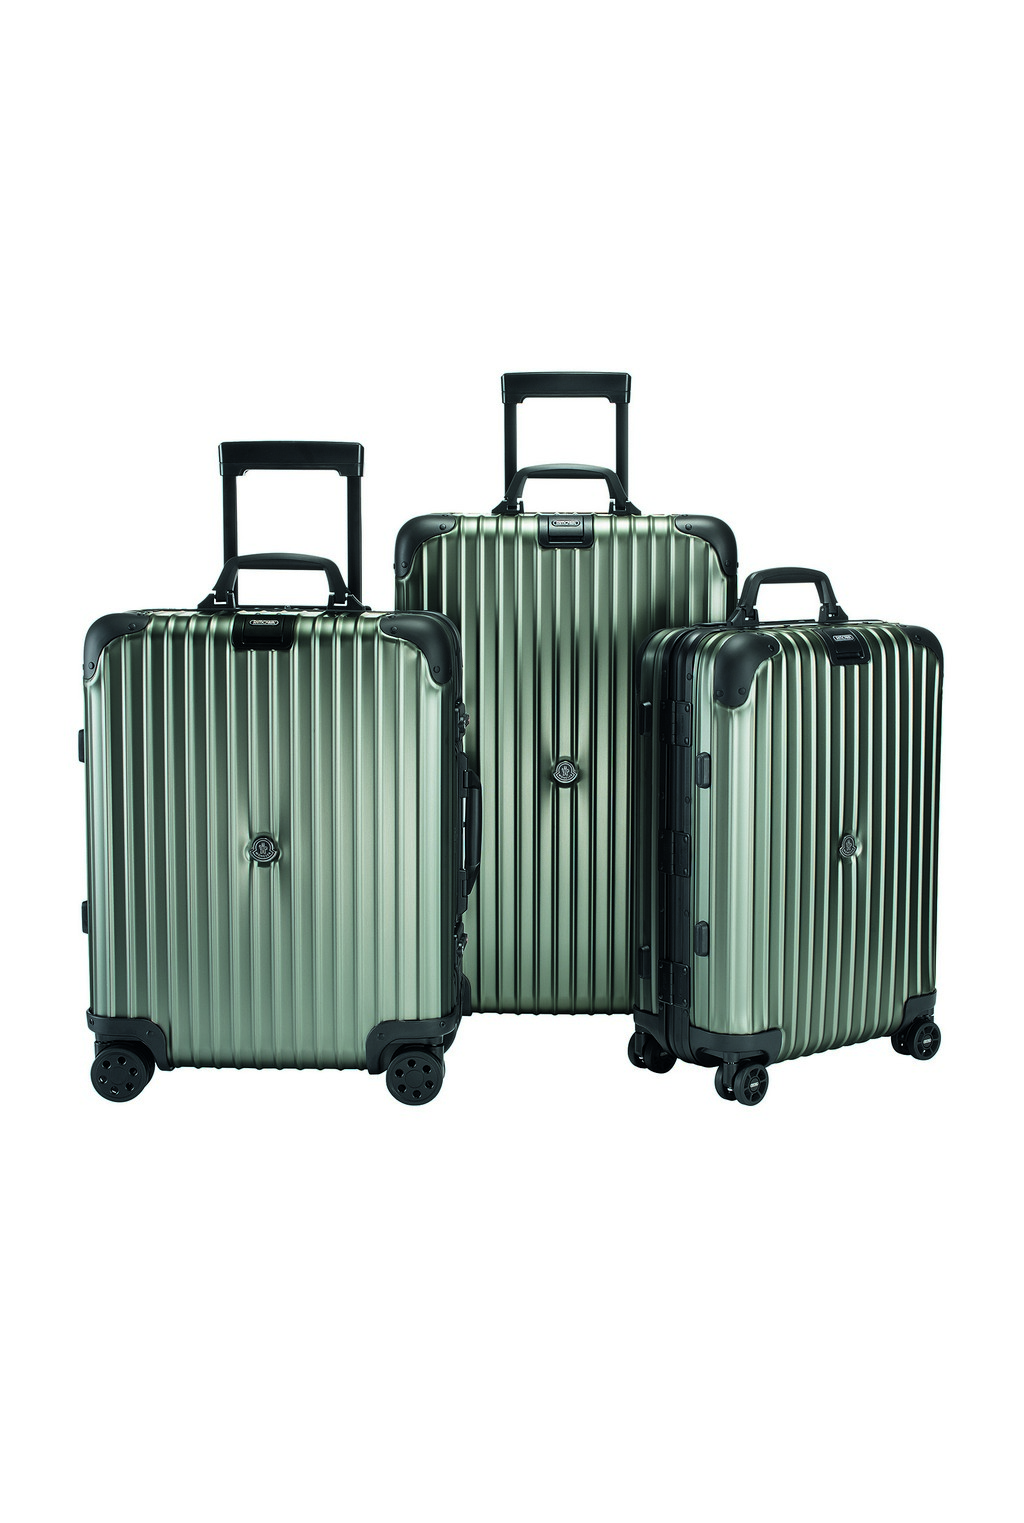 Moncler Rimowa: la nuova versione del Cabin Luggage, le foto